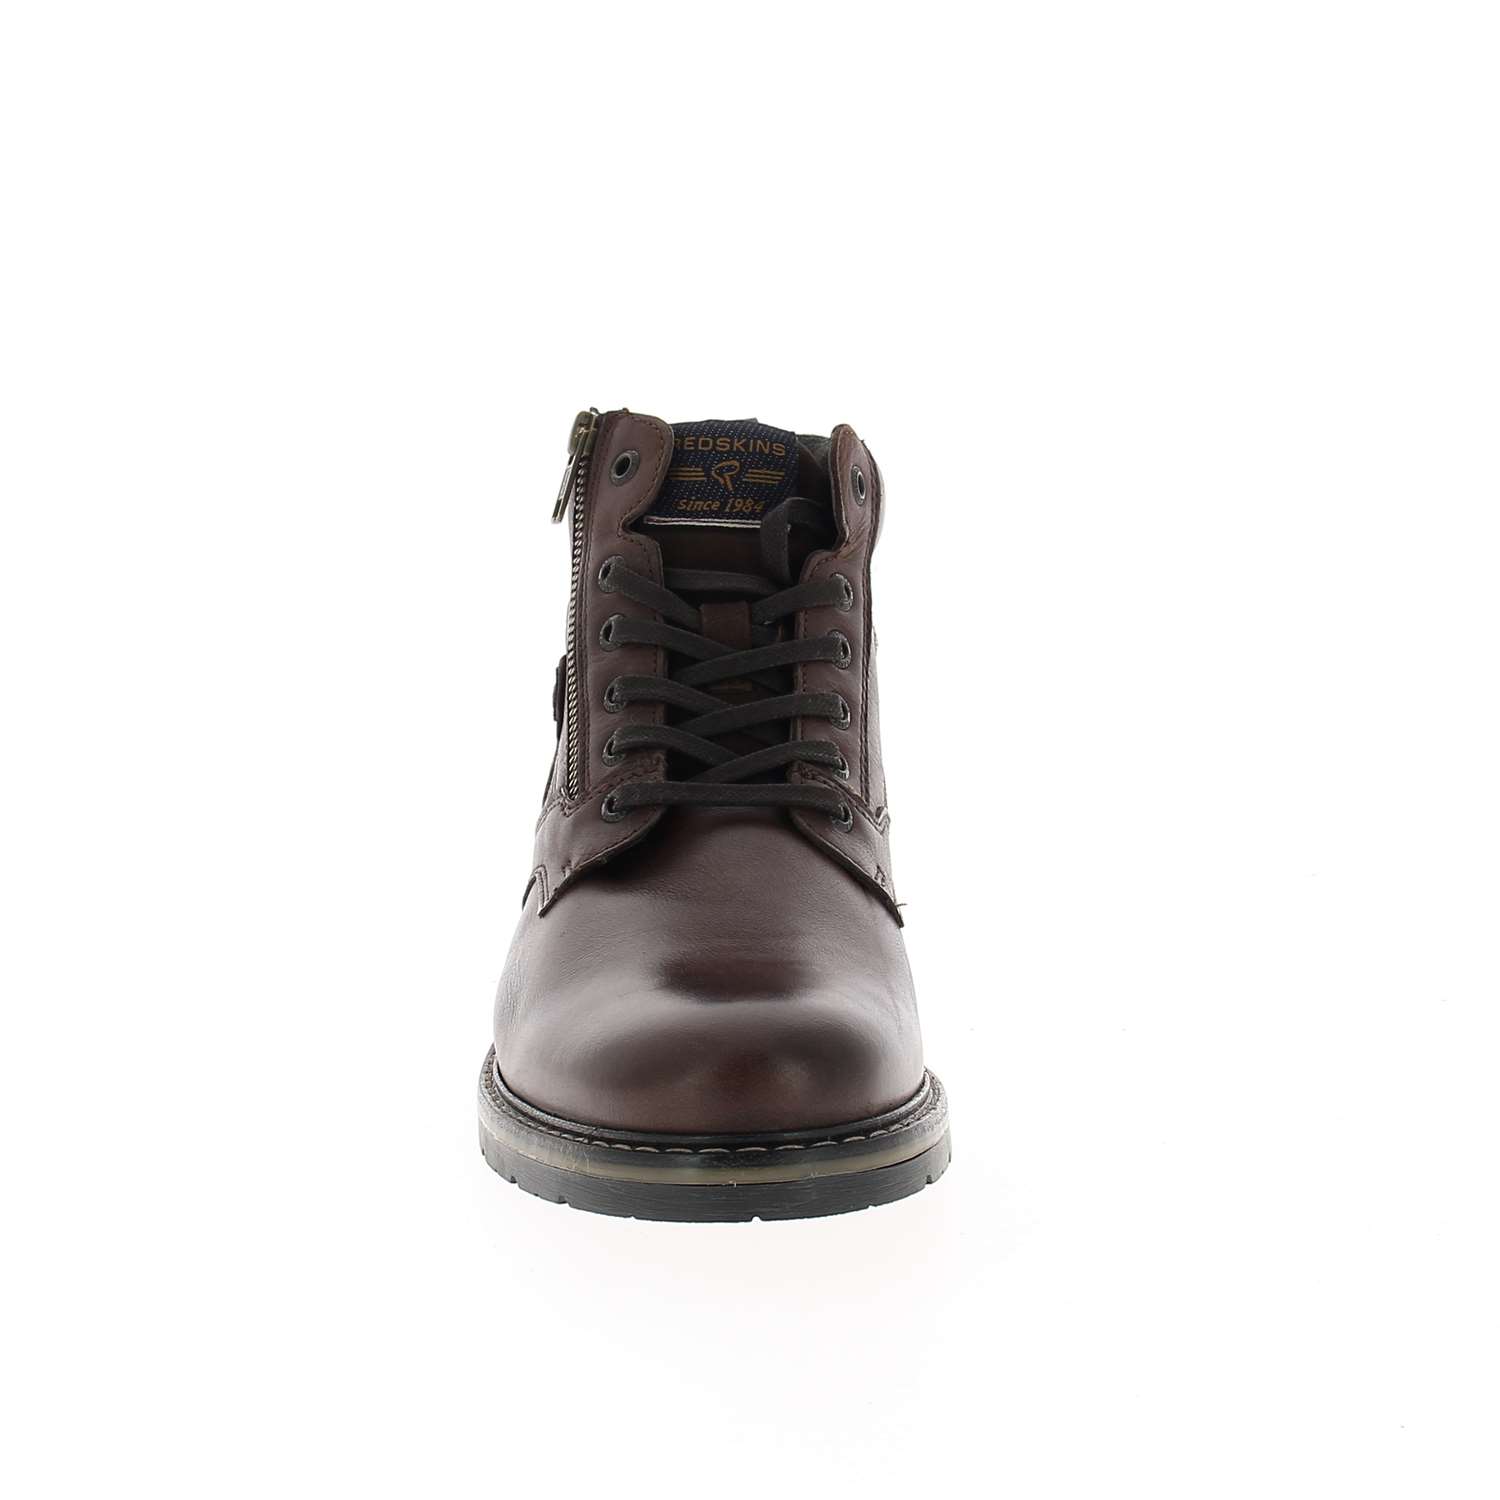 03 - ETERNEL - CLEON - Boots et bottines - Cuir